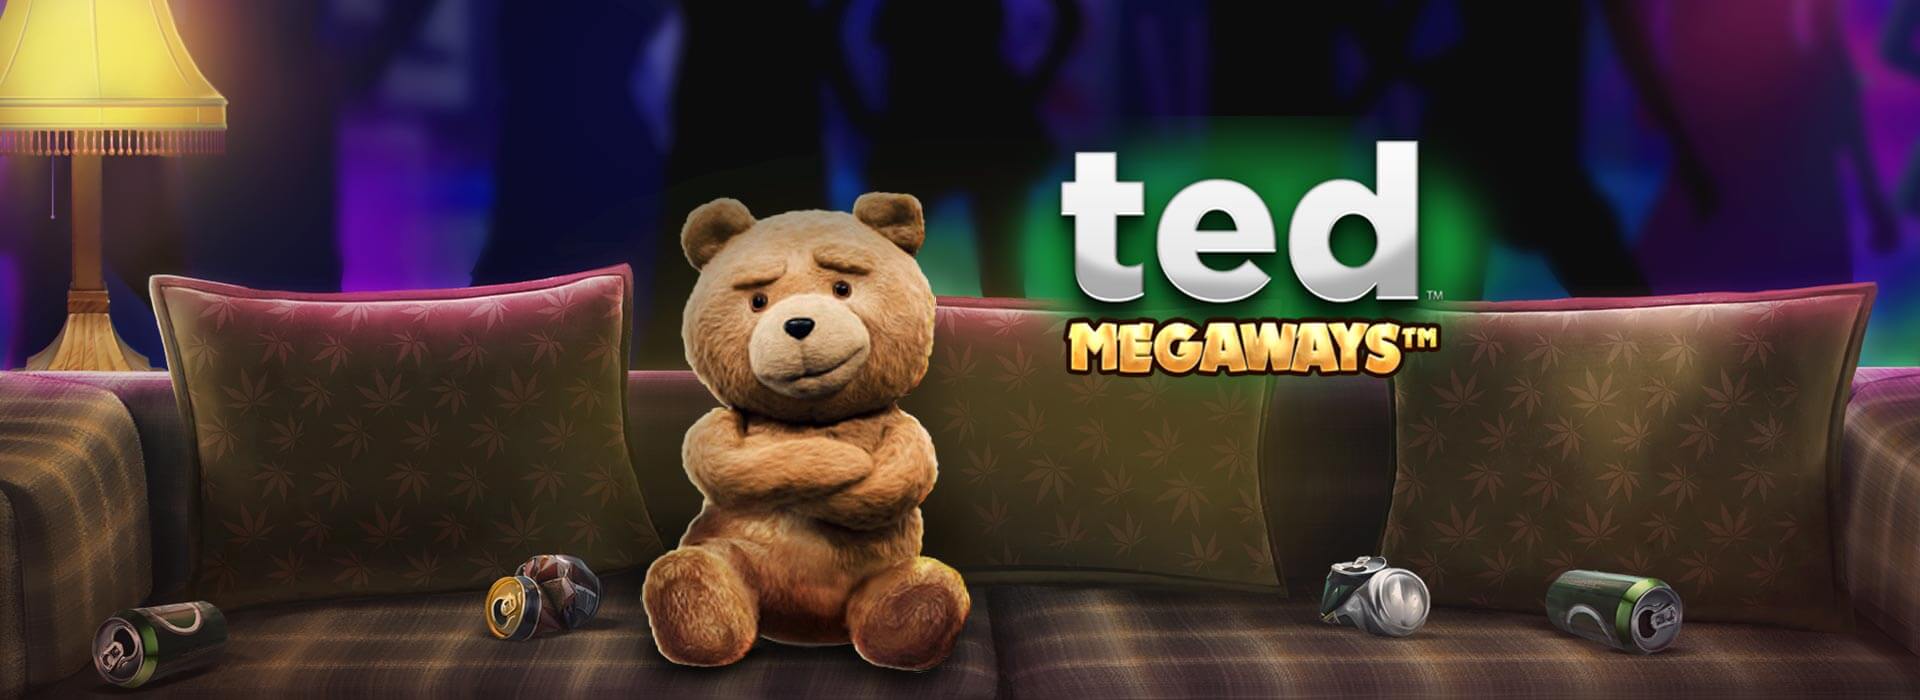 สล็อต Ted Megaways 